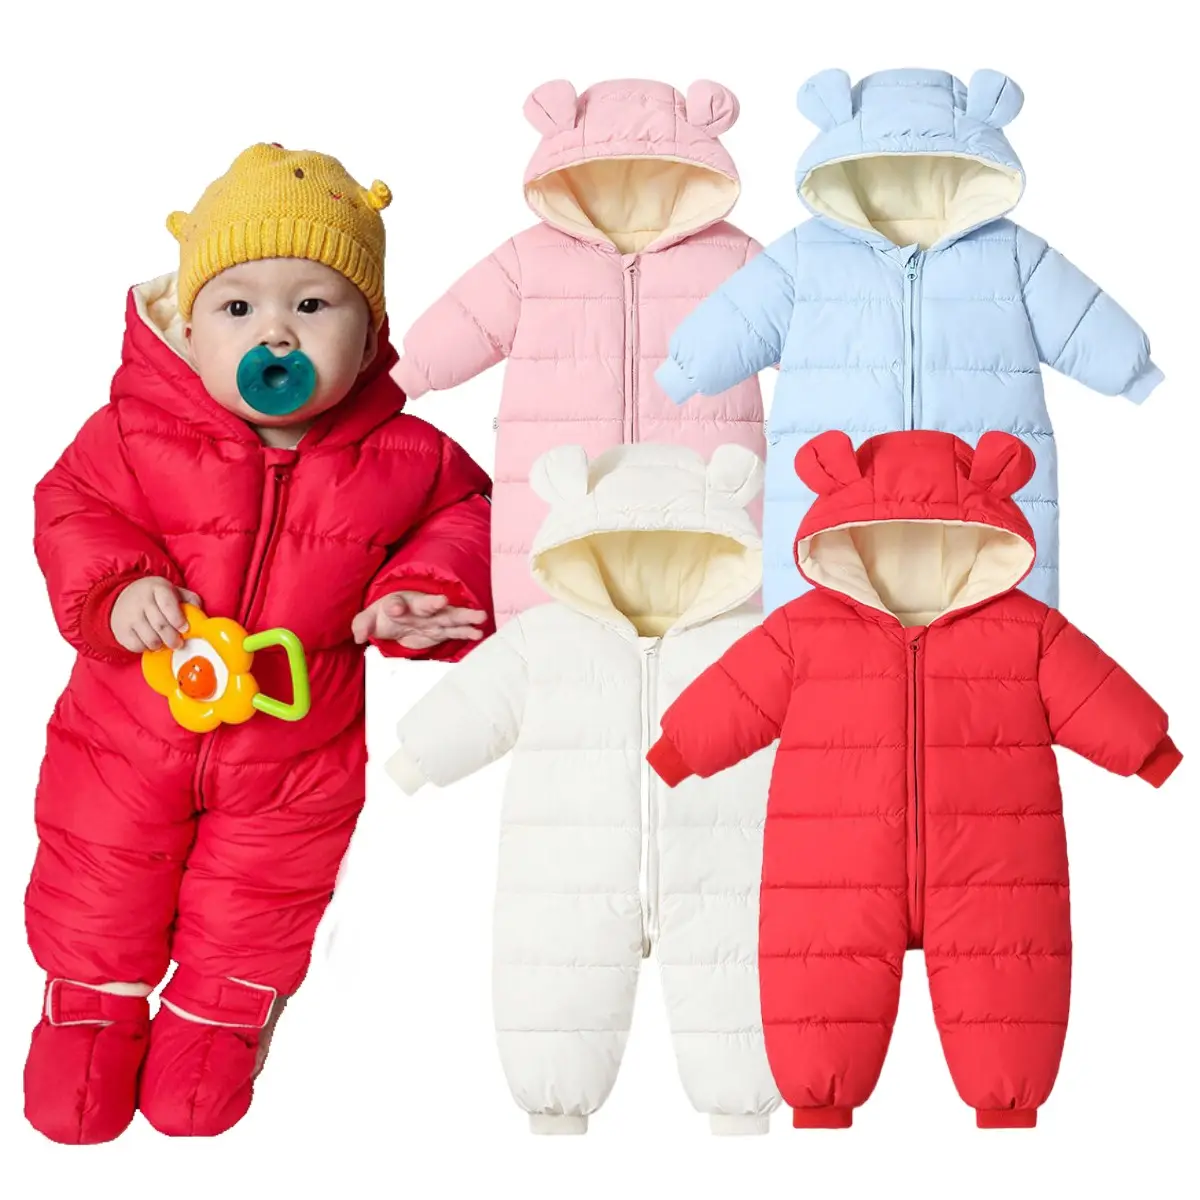 義烏義源衣服用ダブルジッパージャンプスーツ男の子厚手の服新生児ジャンプスーツ赤ちゃんかわいいロングロンパース赤ちゃん冬